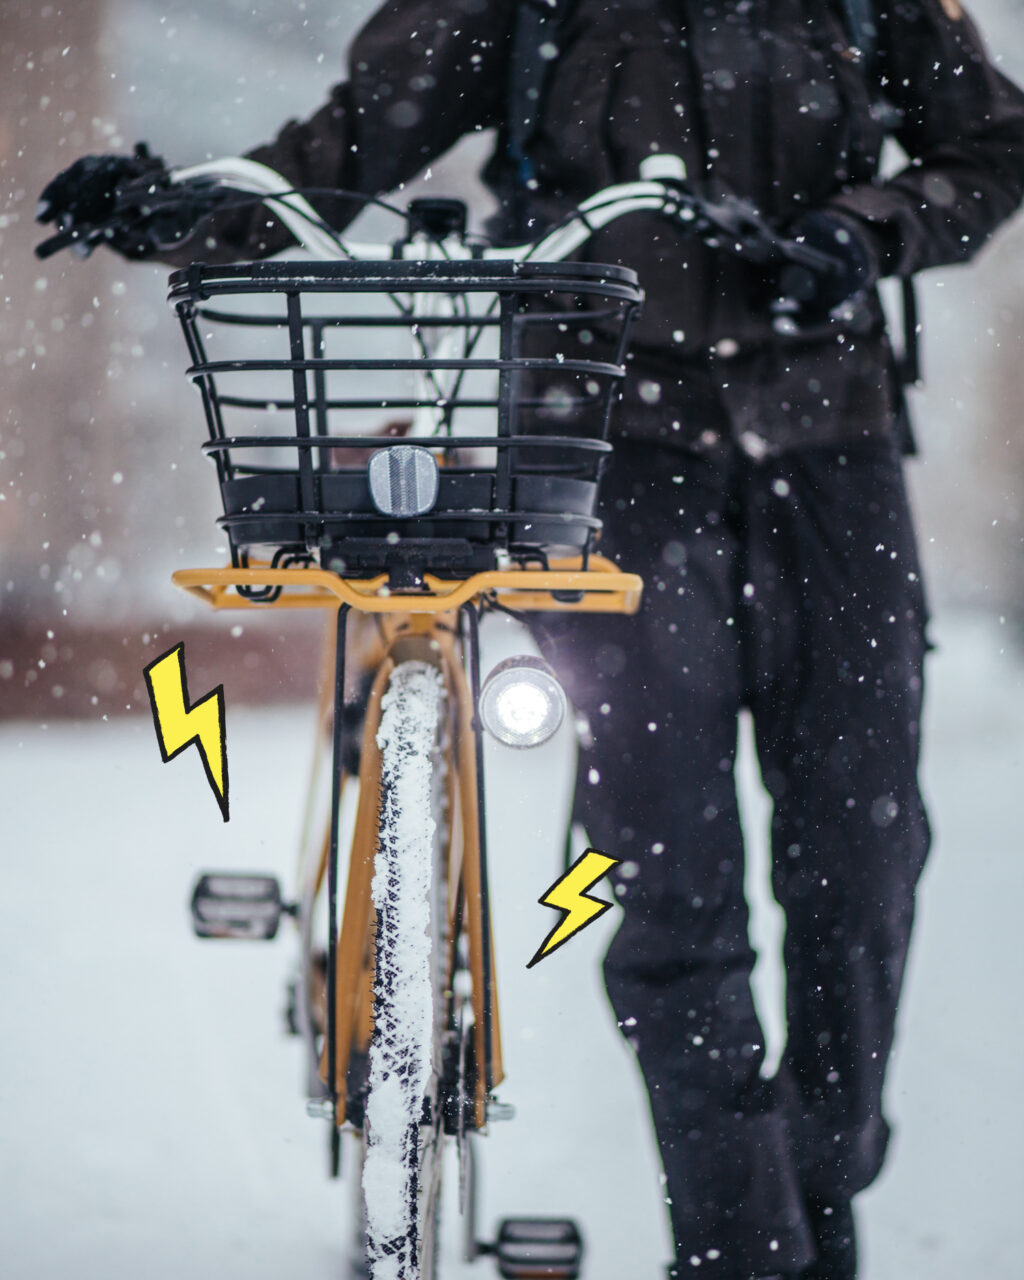 Työsuhdepyöräetu on lisännyt merkittävästi talvipyöräilyä. 🚲Laadukkaalla pyörällä ja oikeanlaisilla varusteilla pyöräilykausi ei rajoitu pelkästään sulan maan aikaan, ja työmatkapyöräily voi olla osa arkiliikuntaa vuodenajasta riippumatta. Muista ainakin nämä, kun pohdit talvipyöräilyn aloittamista:1️⃣Panosta laadukkaaseen pyörään, joka kestää talviolosuhteita.2️⃣Oikeanlaiset renkaat lumelle ja liukkaalle kelille.3️⃣Valot ovat pakollinen varuste pimeässä ajaessa. Eteen valkoinen valo ja taakse punainen. 4️⃣Kerrospukeutuminen – säädä kerroksia lämpötilan ja kosteuden mukaan.#työsuhdepyöräetu #talvipyöräily #oomienergia #työsuhdepyörä